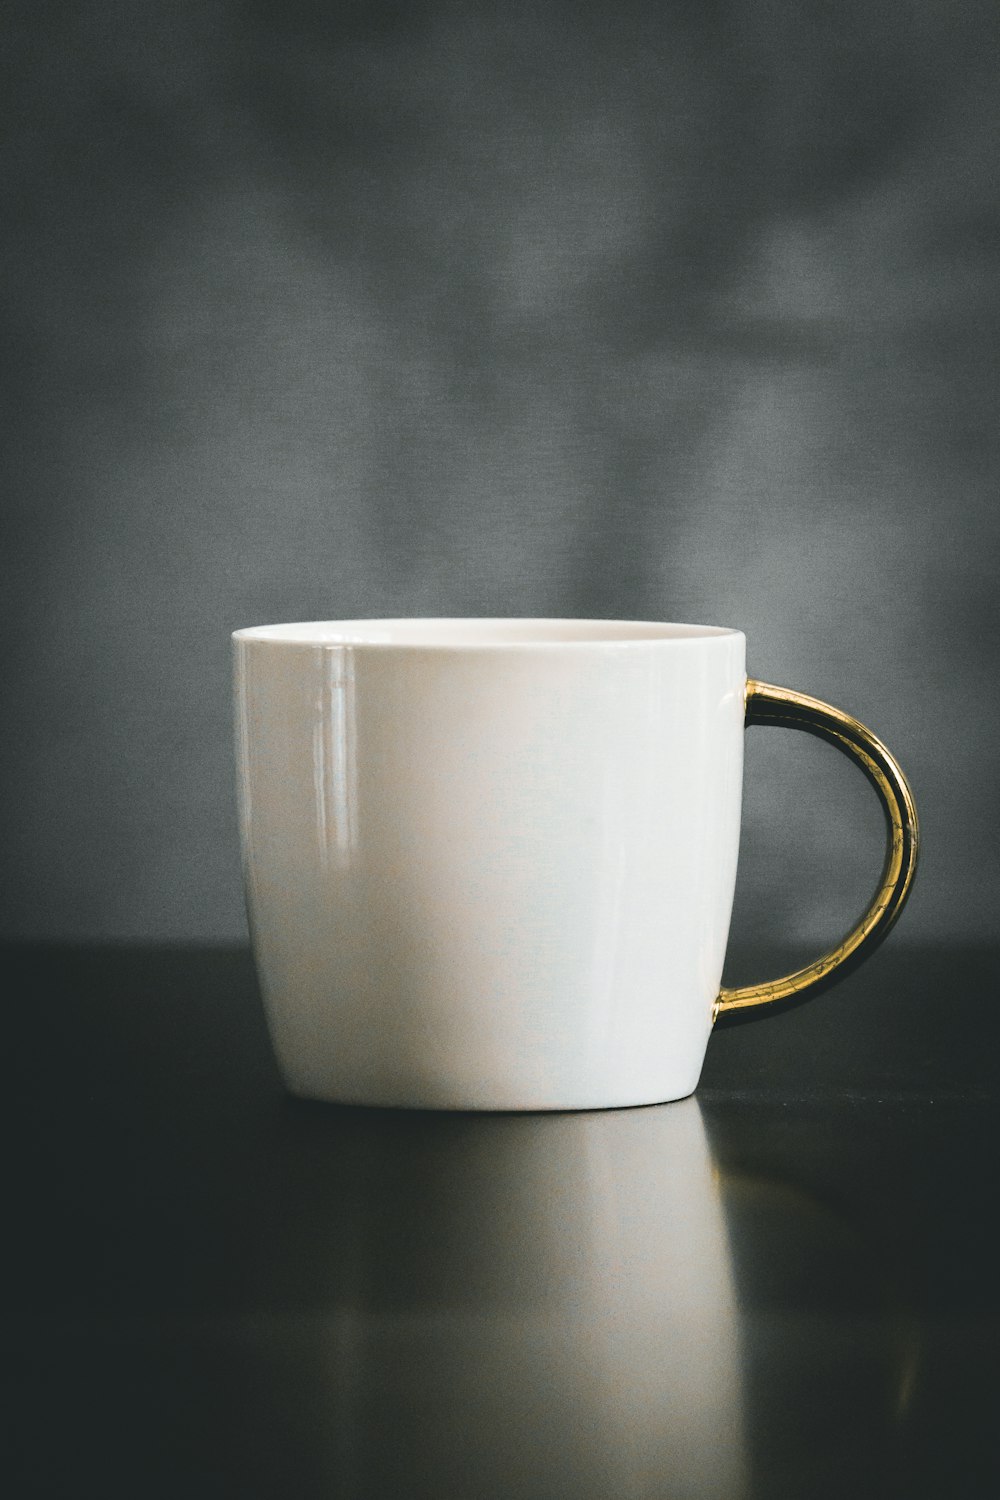 white and beige ceramic mug on black surface